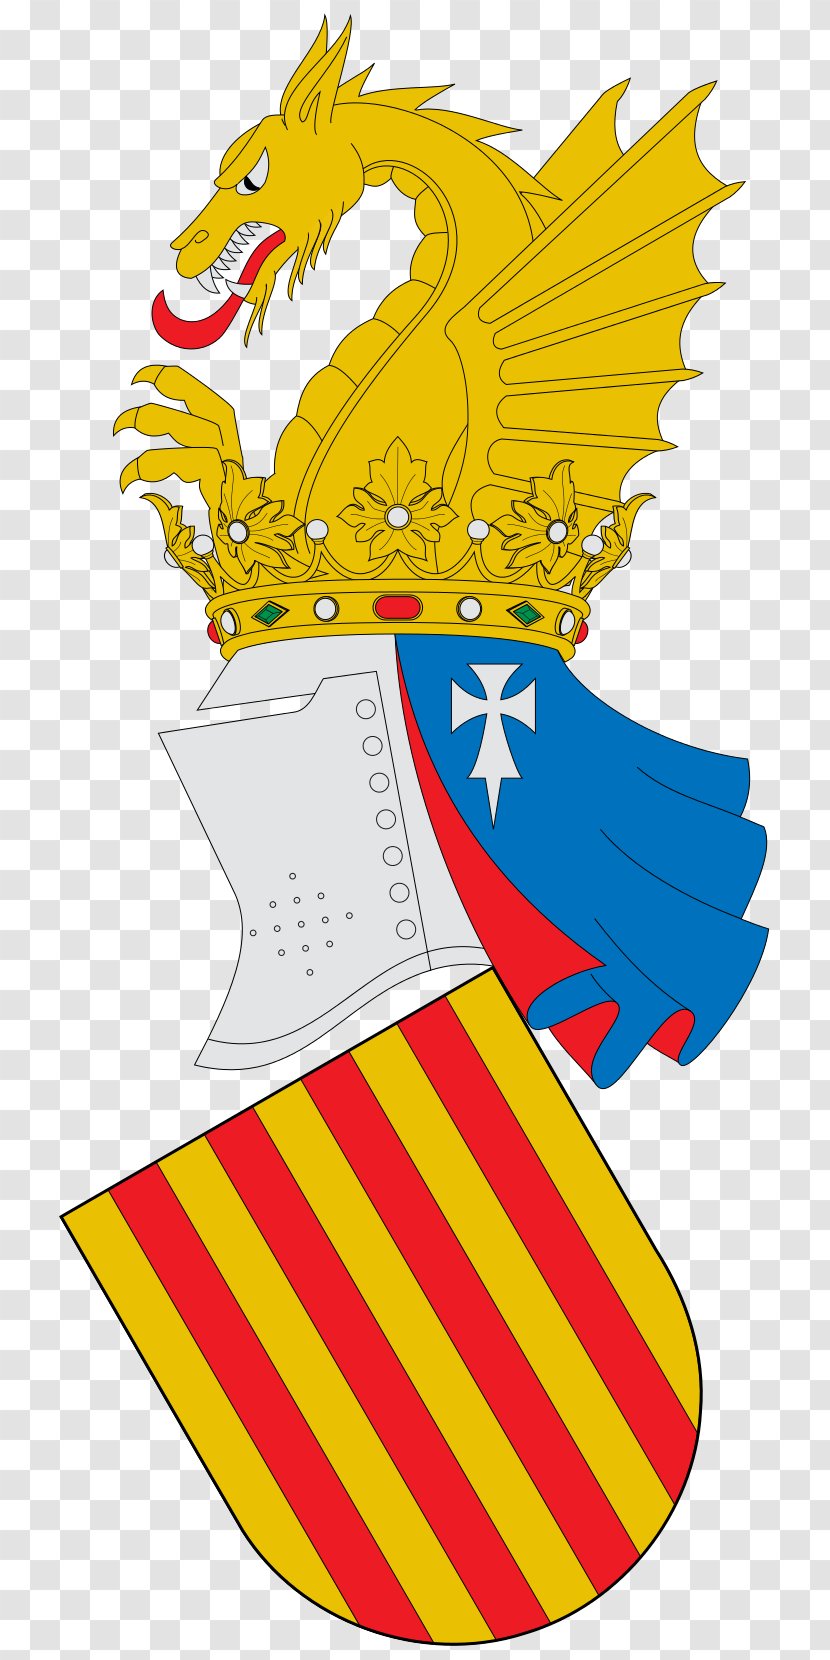 Kingdom Of Valencia Escudo Da Comunidade Valenciana Escutcheon Blason De Valence - Lined Transparent PNG